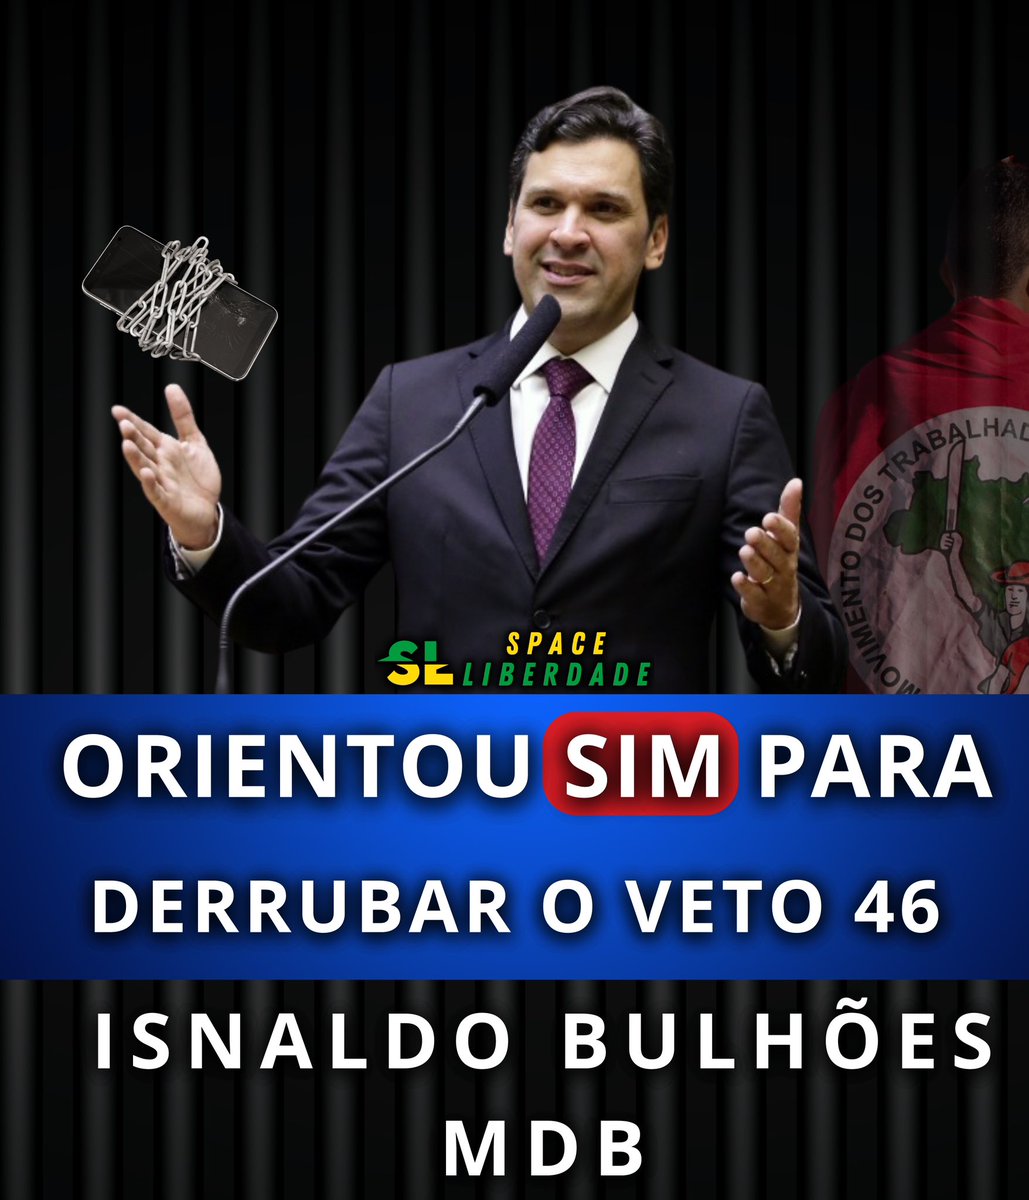 🚨VERGONHA - Líder do MDB, Isnaldo Bulhões, Irá orientar SIM para a derrubada do veto 46! 

Não esqueceremos aqueles que votarem a favor da censura!